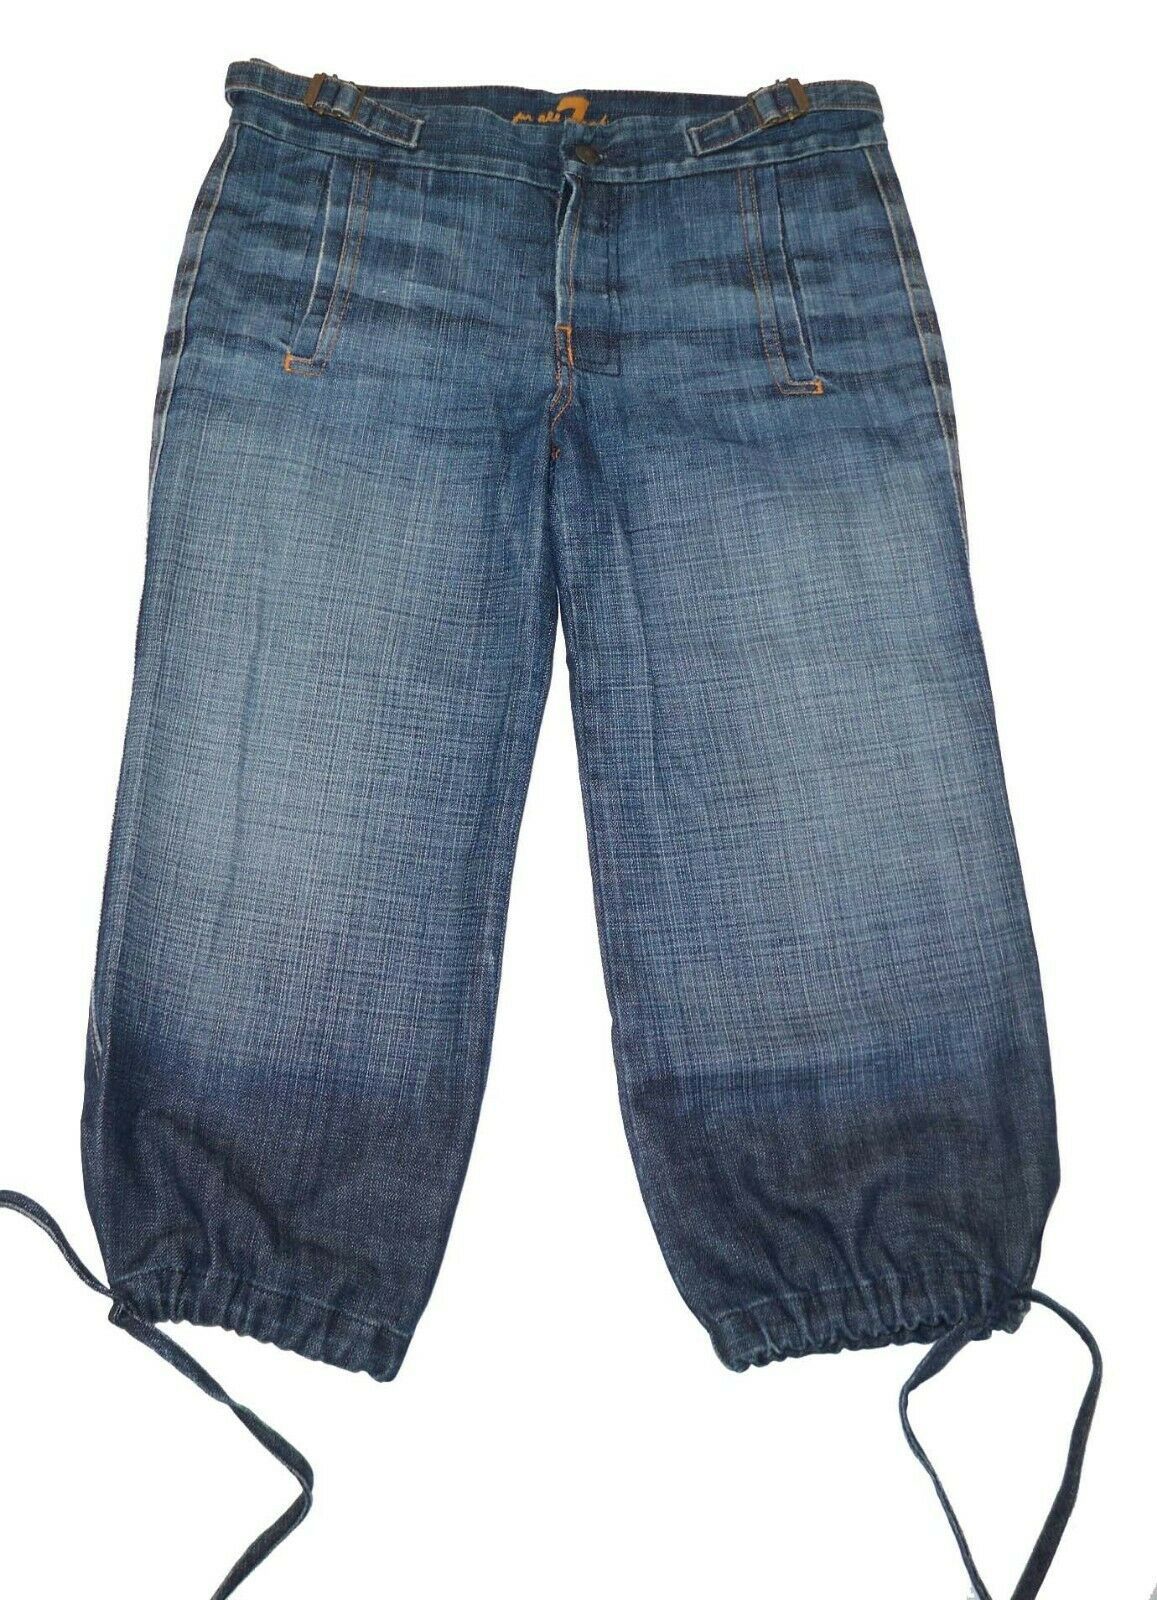 7 For All Mankind 7FAMK 27 Capri Jeans Drawstring Hems - $7.28